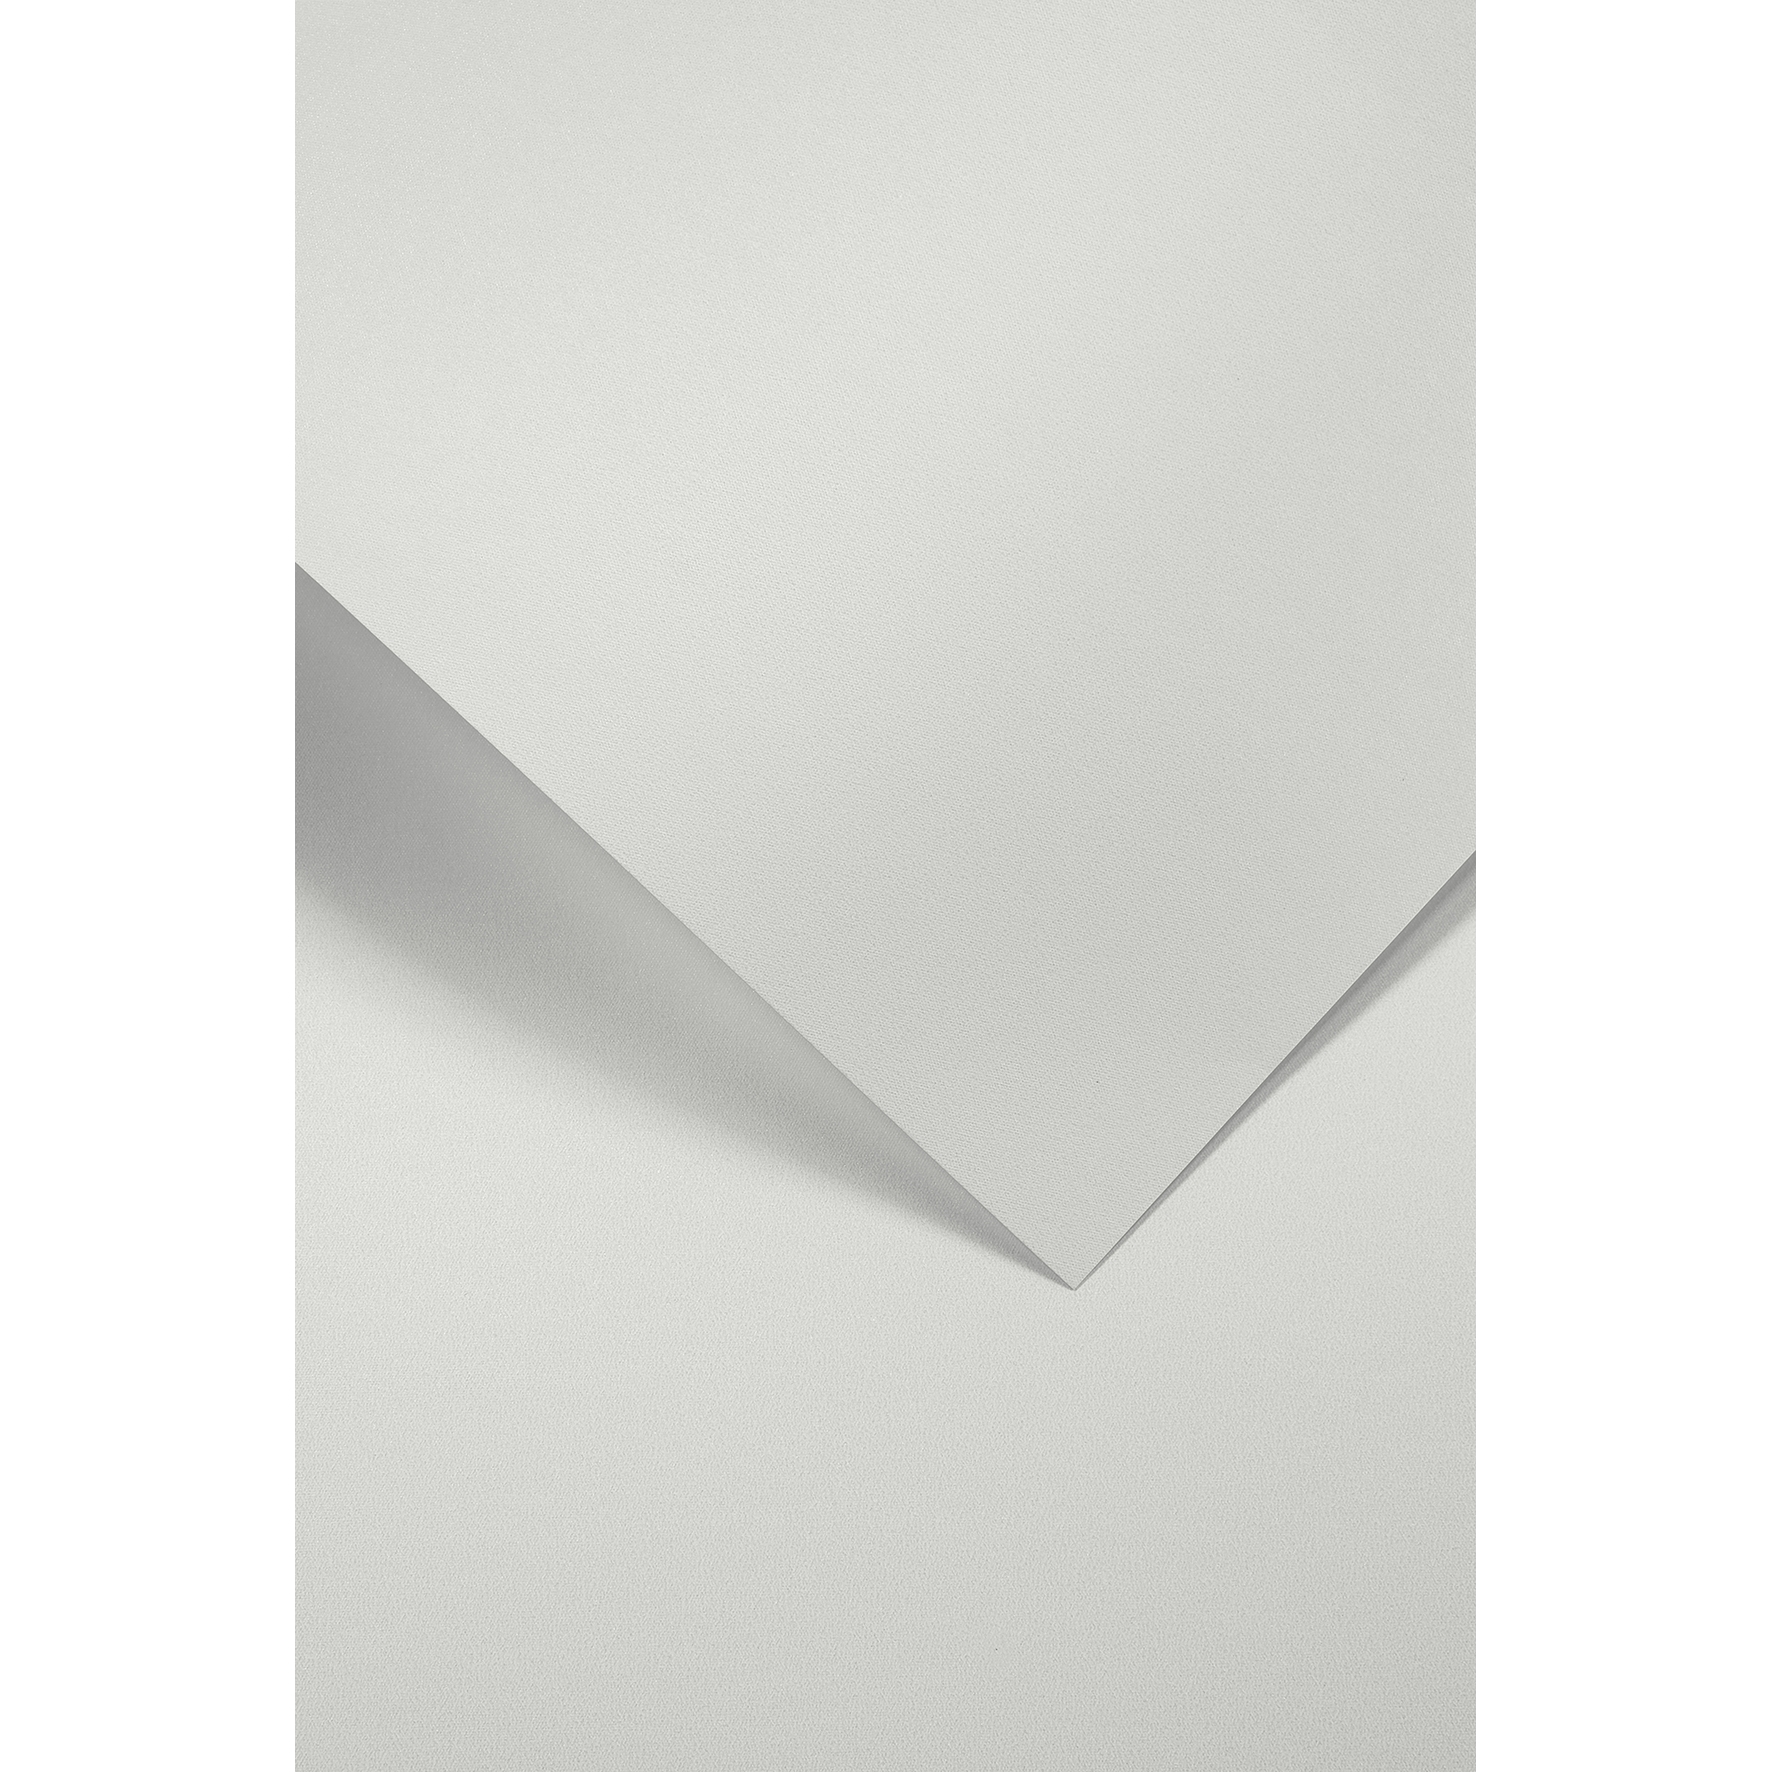 Ozdobný papír Iceland, bílý, 220g, 20ks